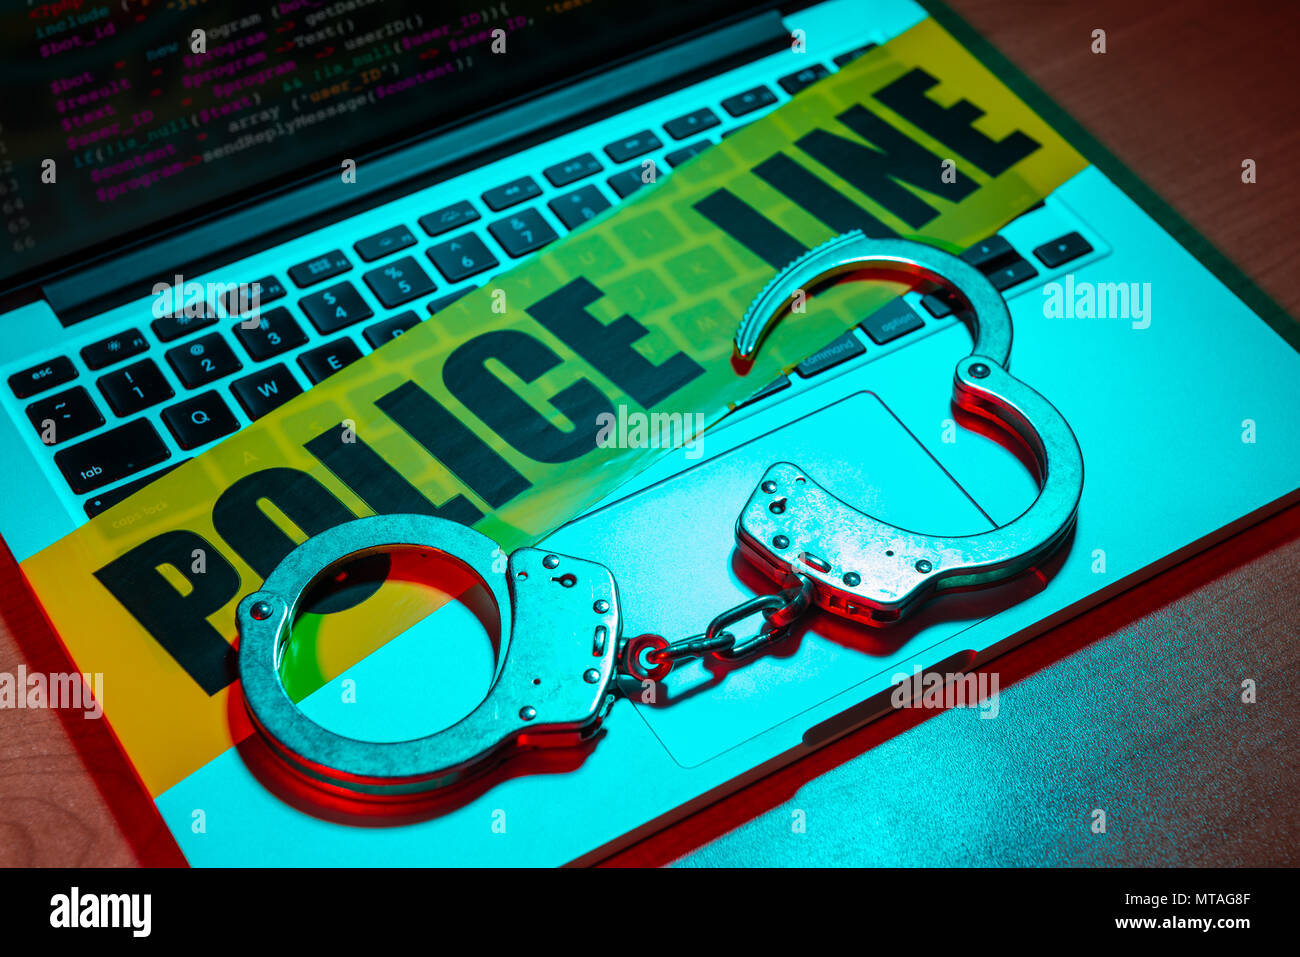 Une paire de menottes et de police au sommet d'une bande de ligne de clavier d'ordinateur portable. Technologie/cyber crime concept. Banque D'Images